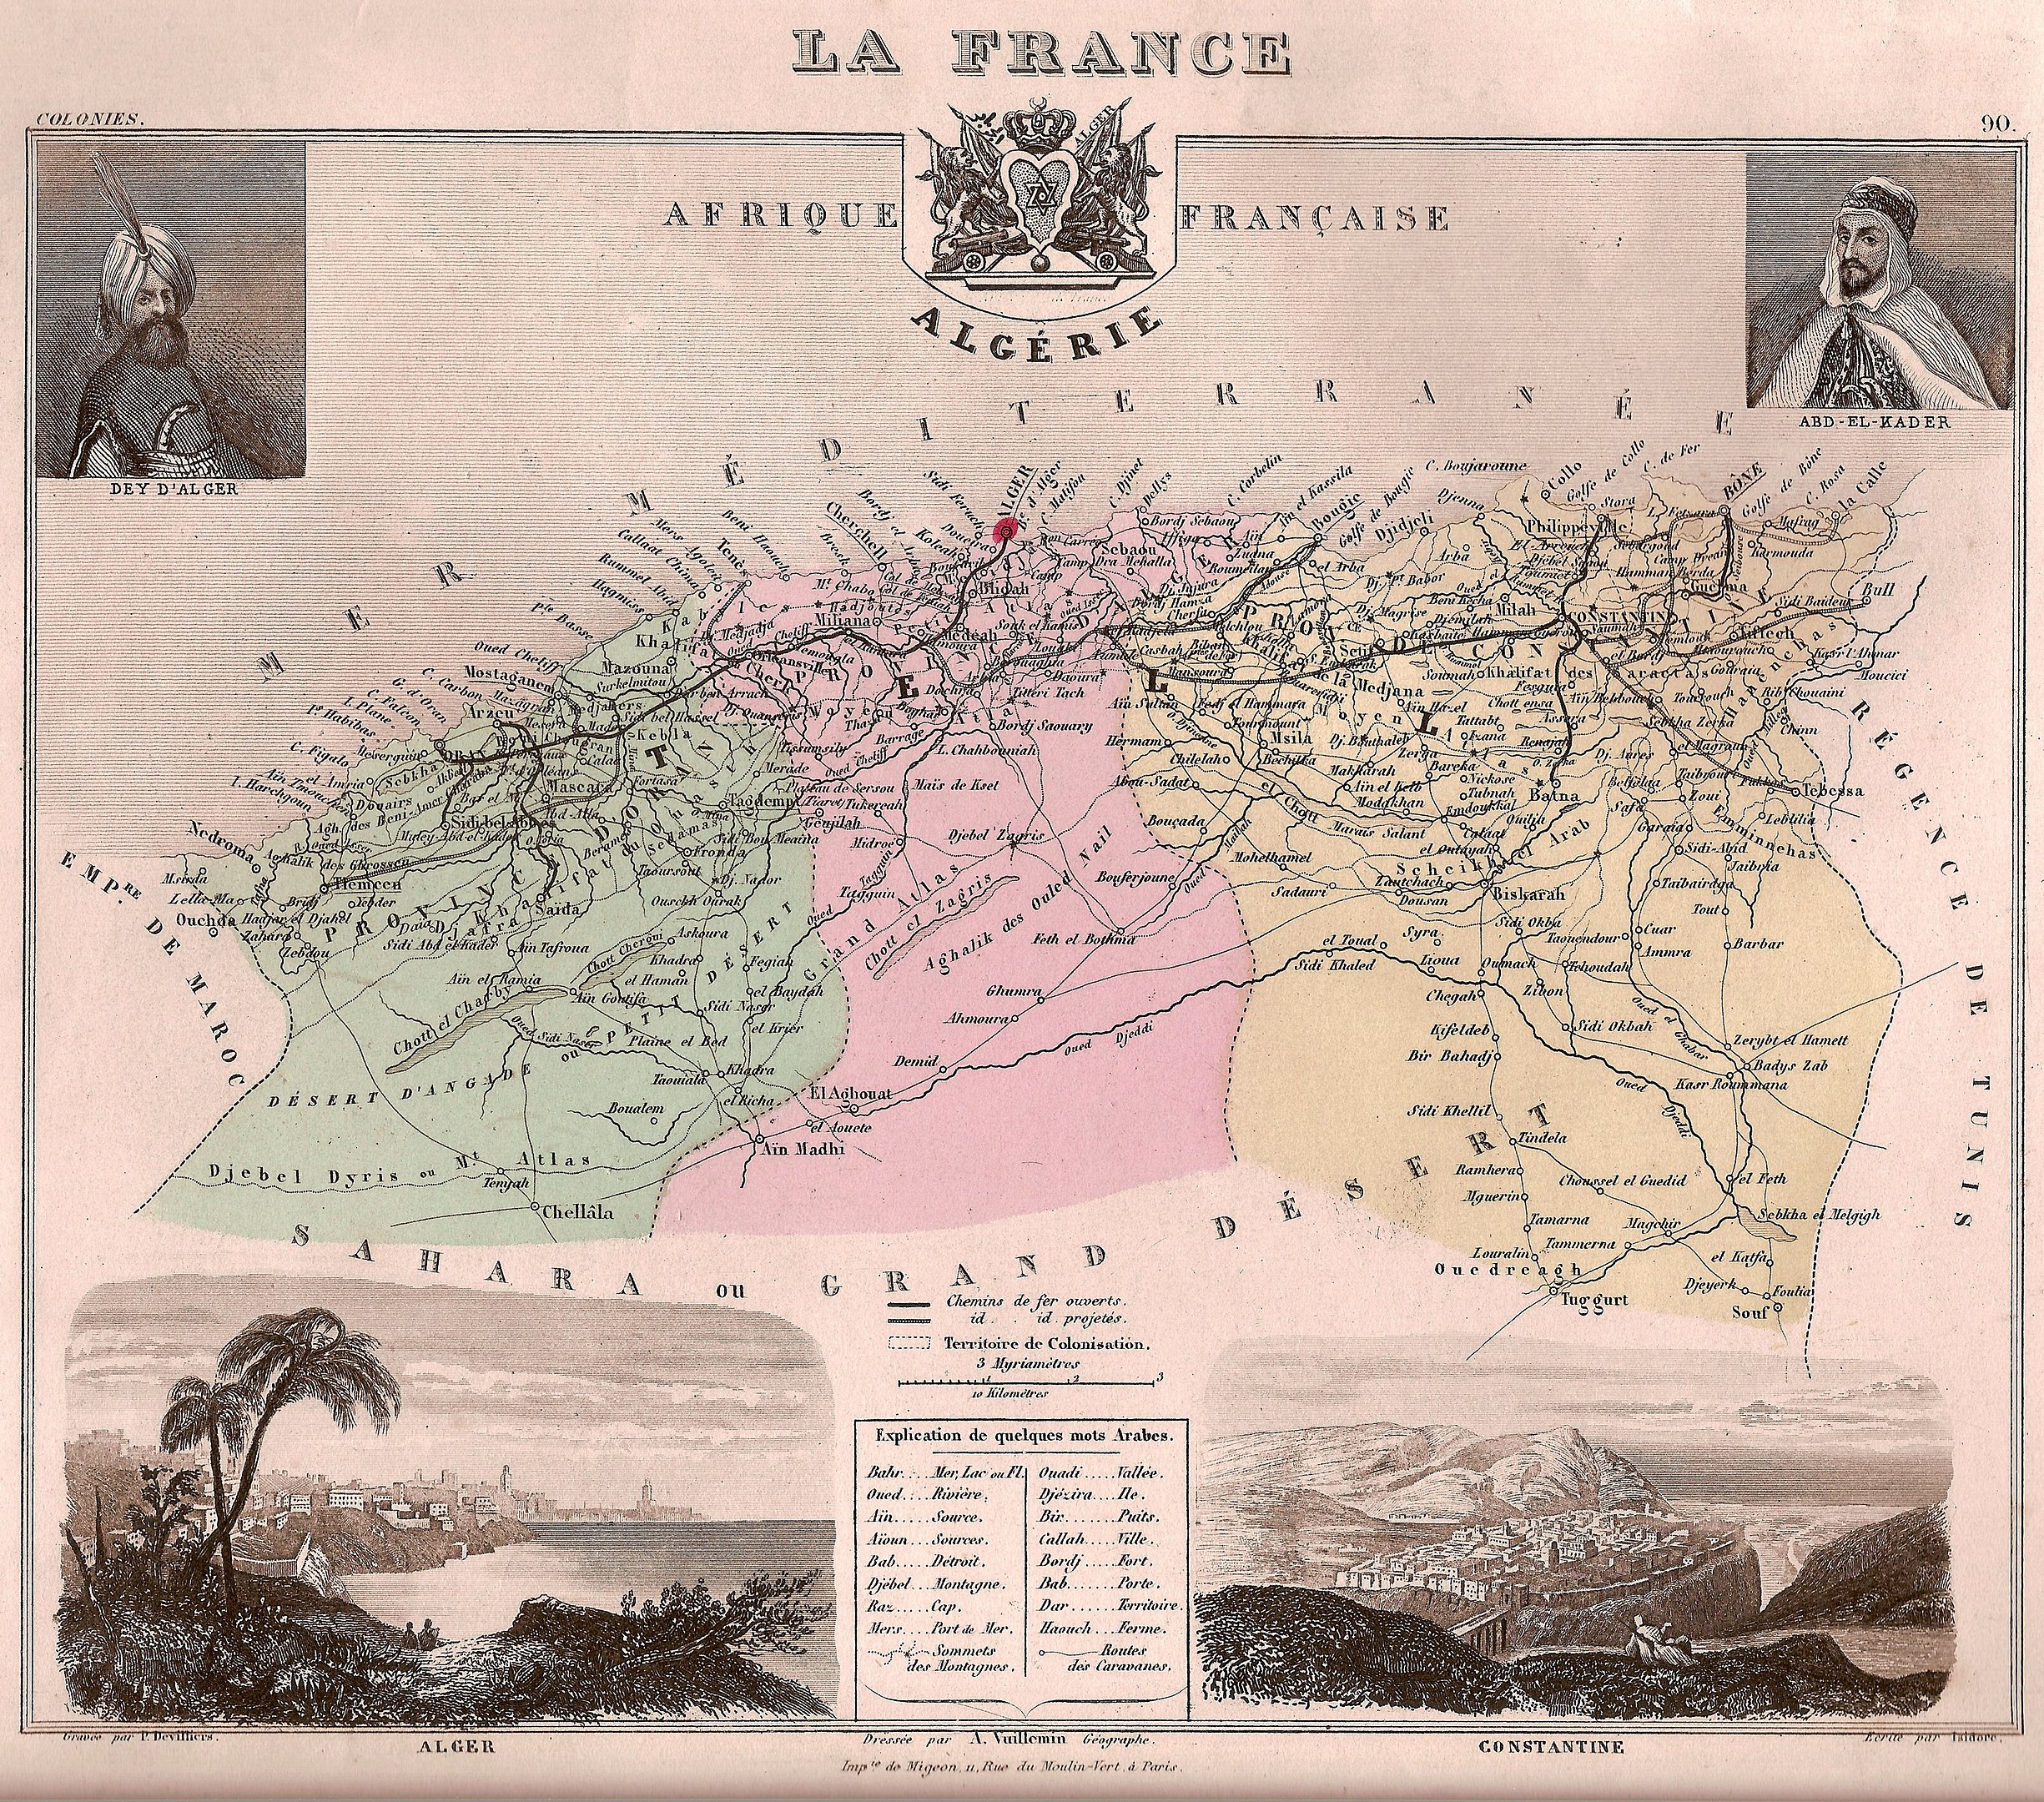 2 de julio de 1962 Charles de Gaulle reconocía la independencia de Argelia